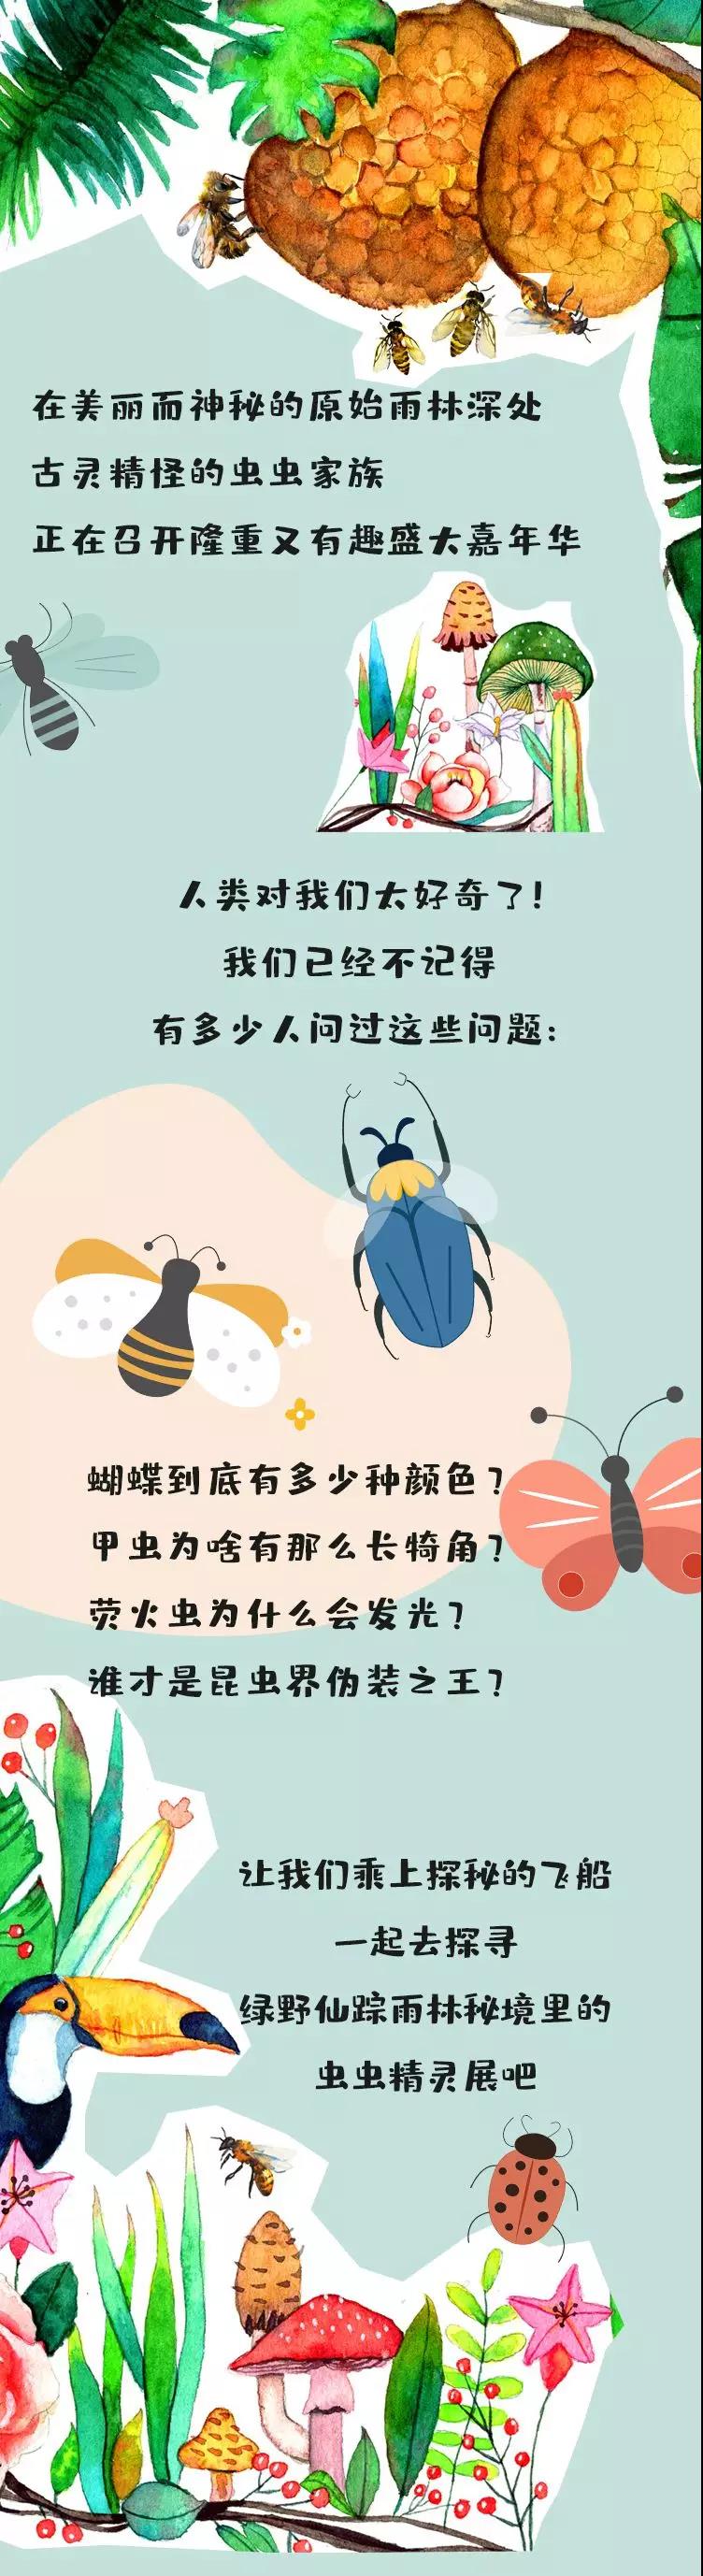 龙凤江城动植物标本配图